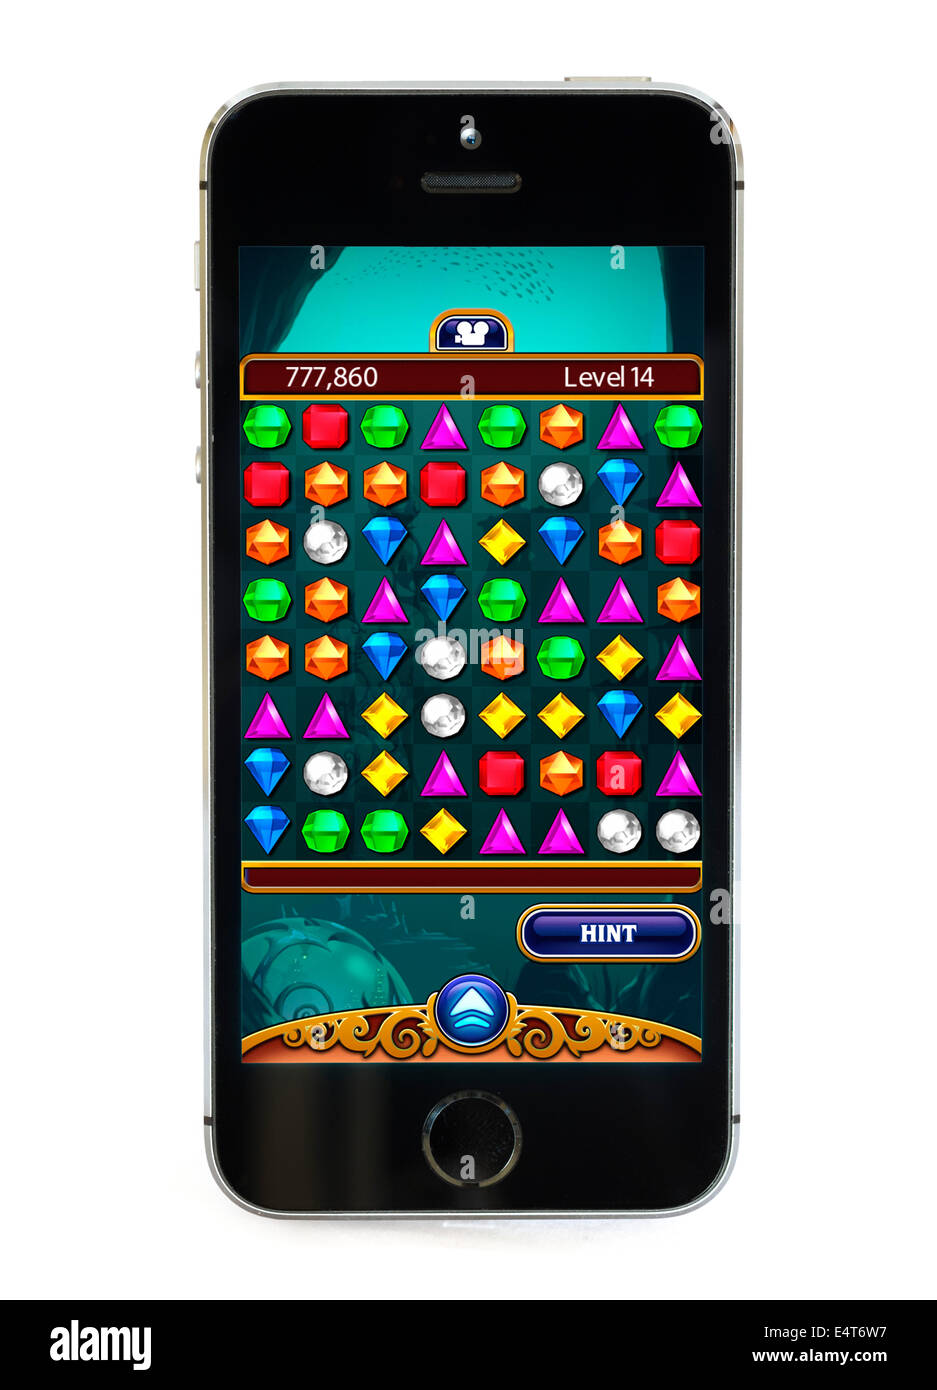 Jugar al popular juego gratuito Bejeweled en un Apple iPhone 5S Foto de stock